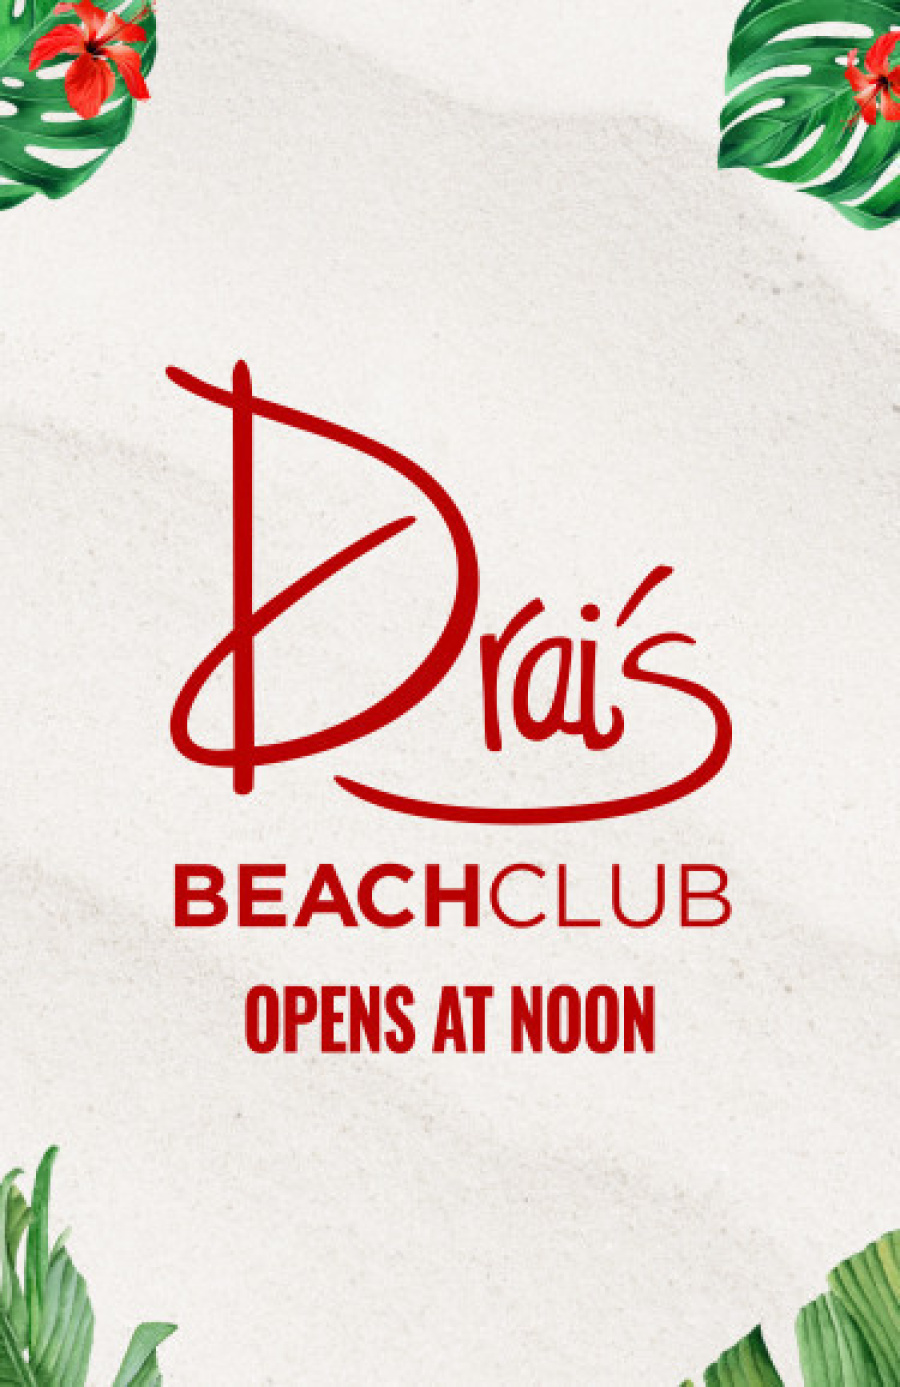 Special Guest at Drai's Beach Club thumbnail